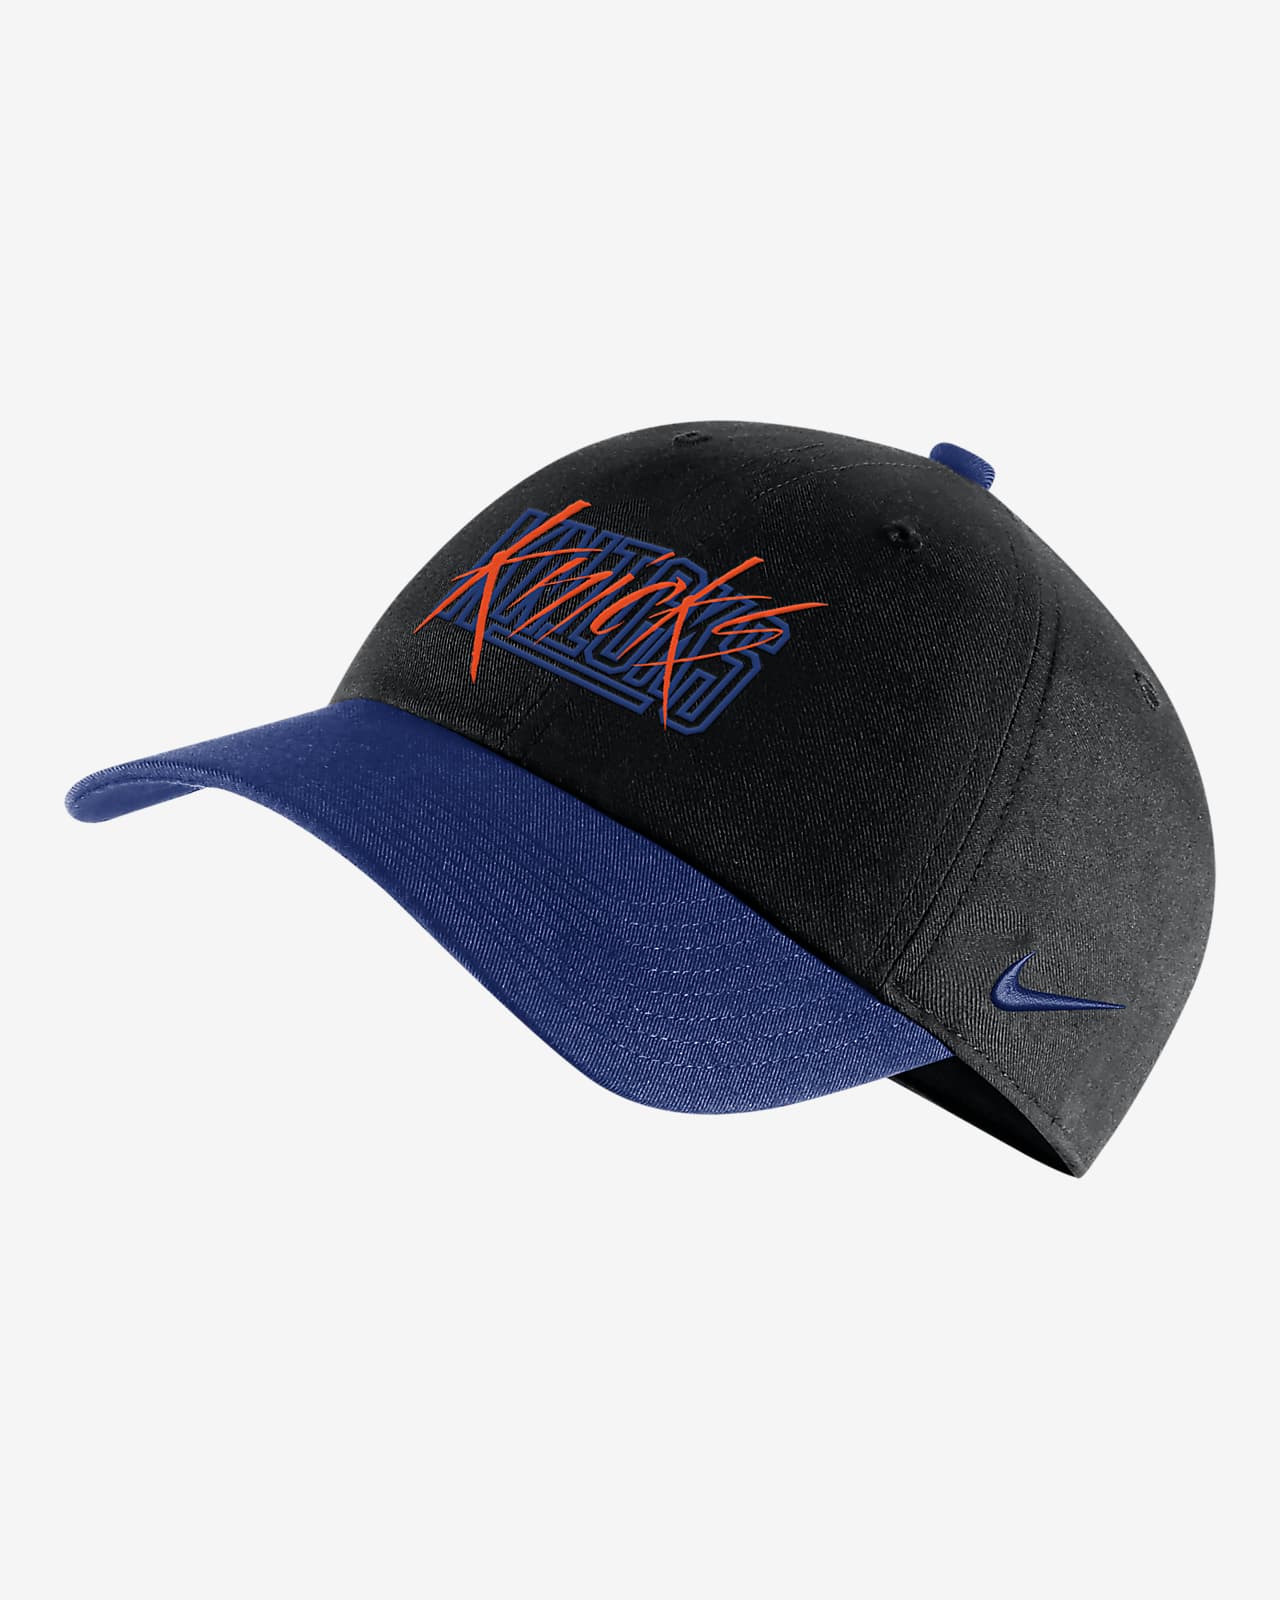 New York Knicks Heritage86 Nike NBA Adjustable Hat